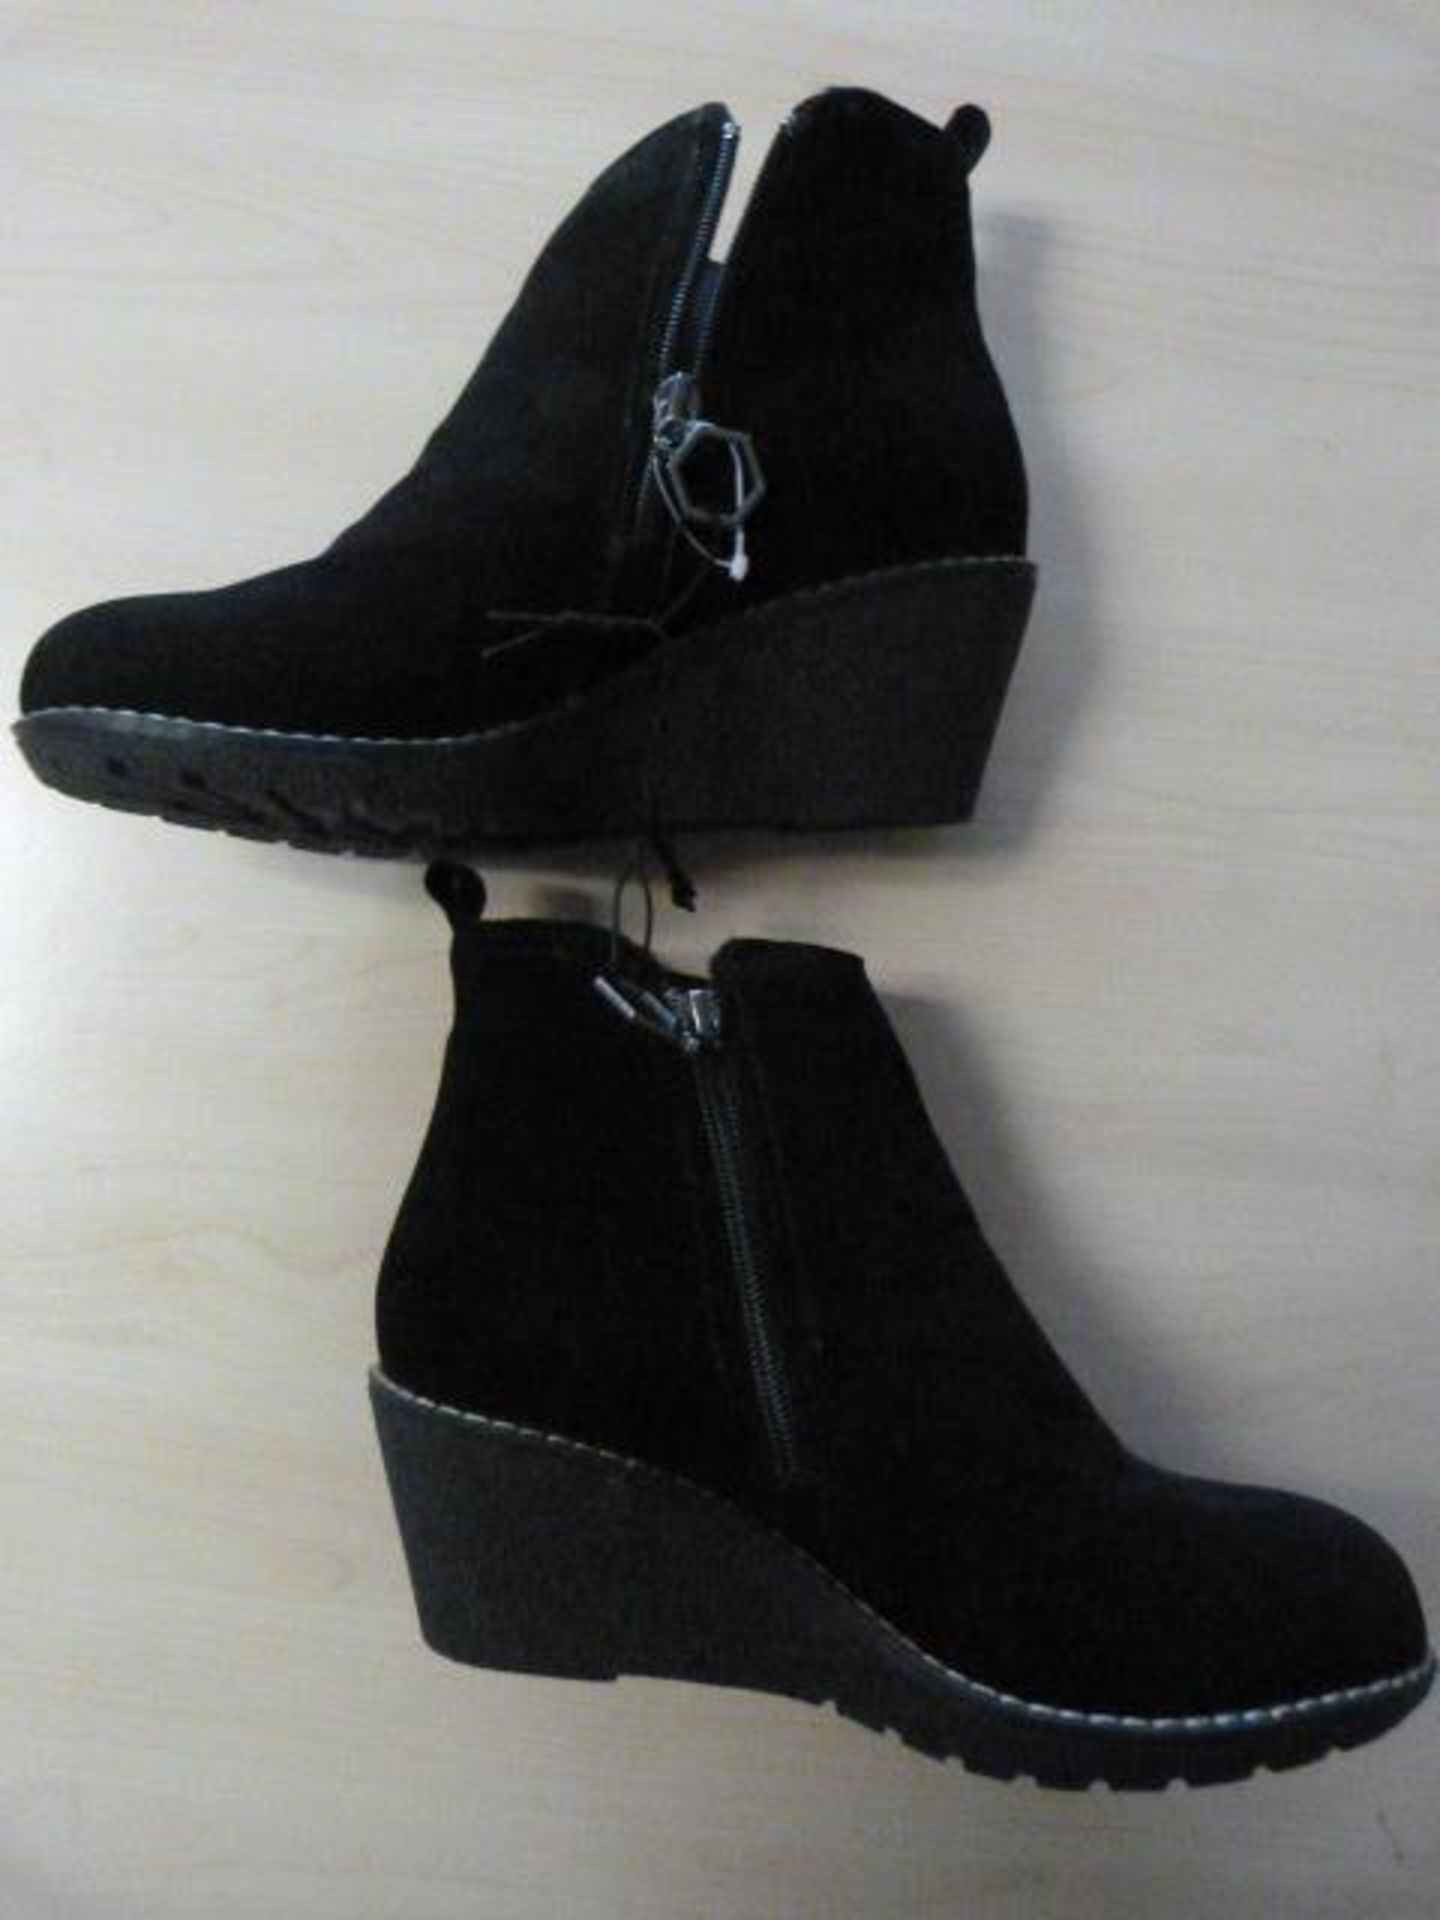 *Khombu Black Boots Size: 6